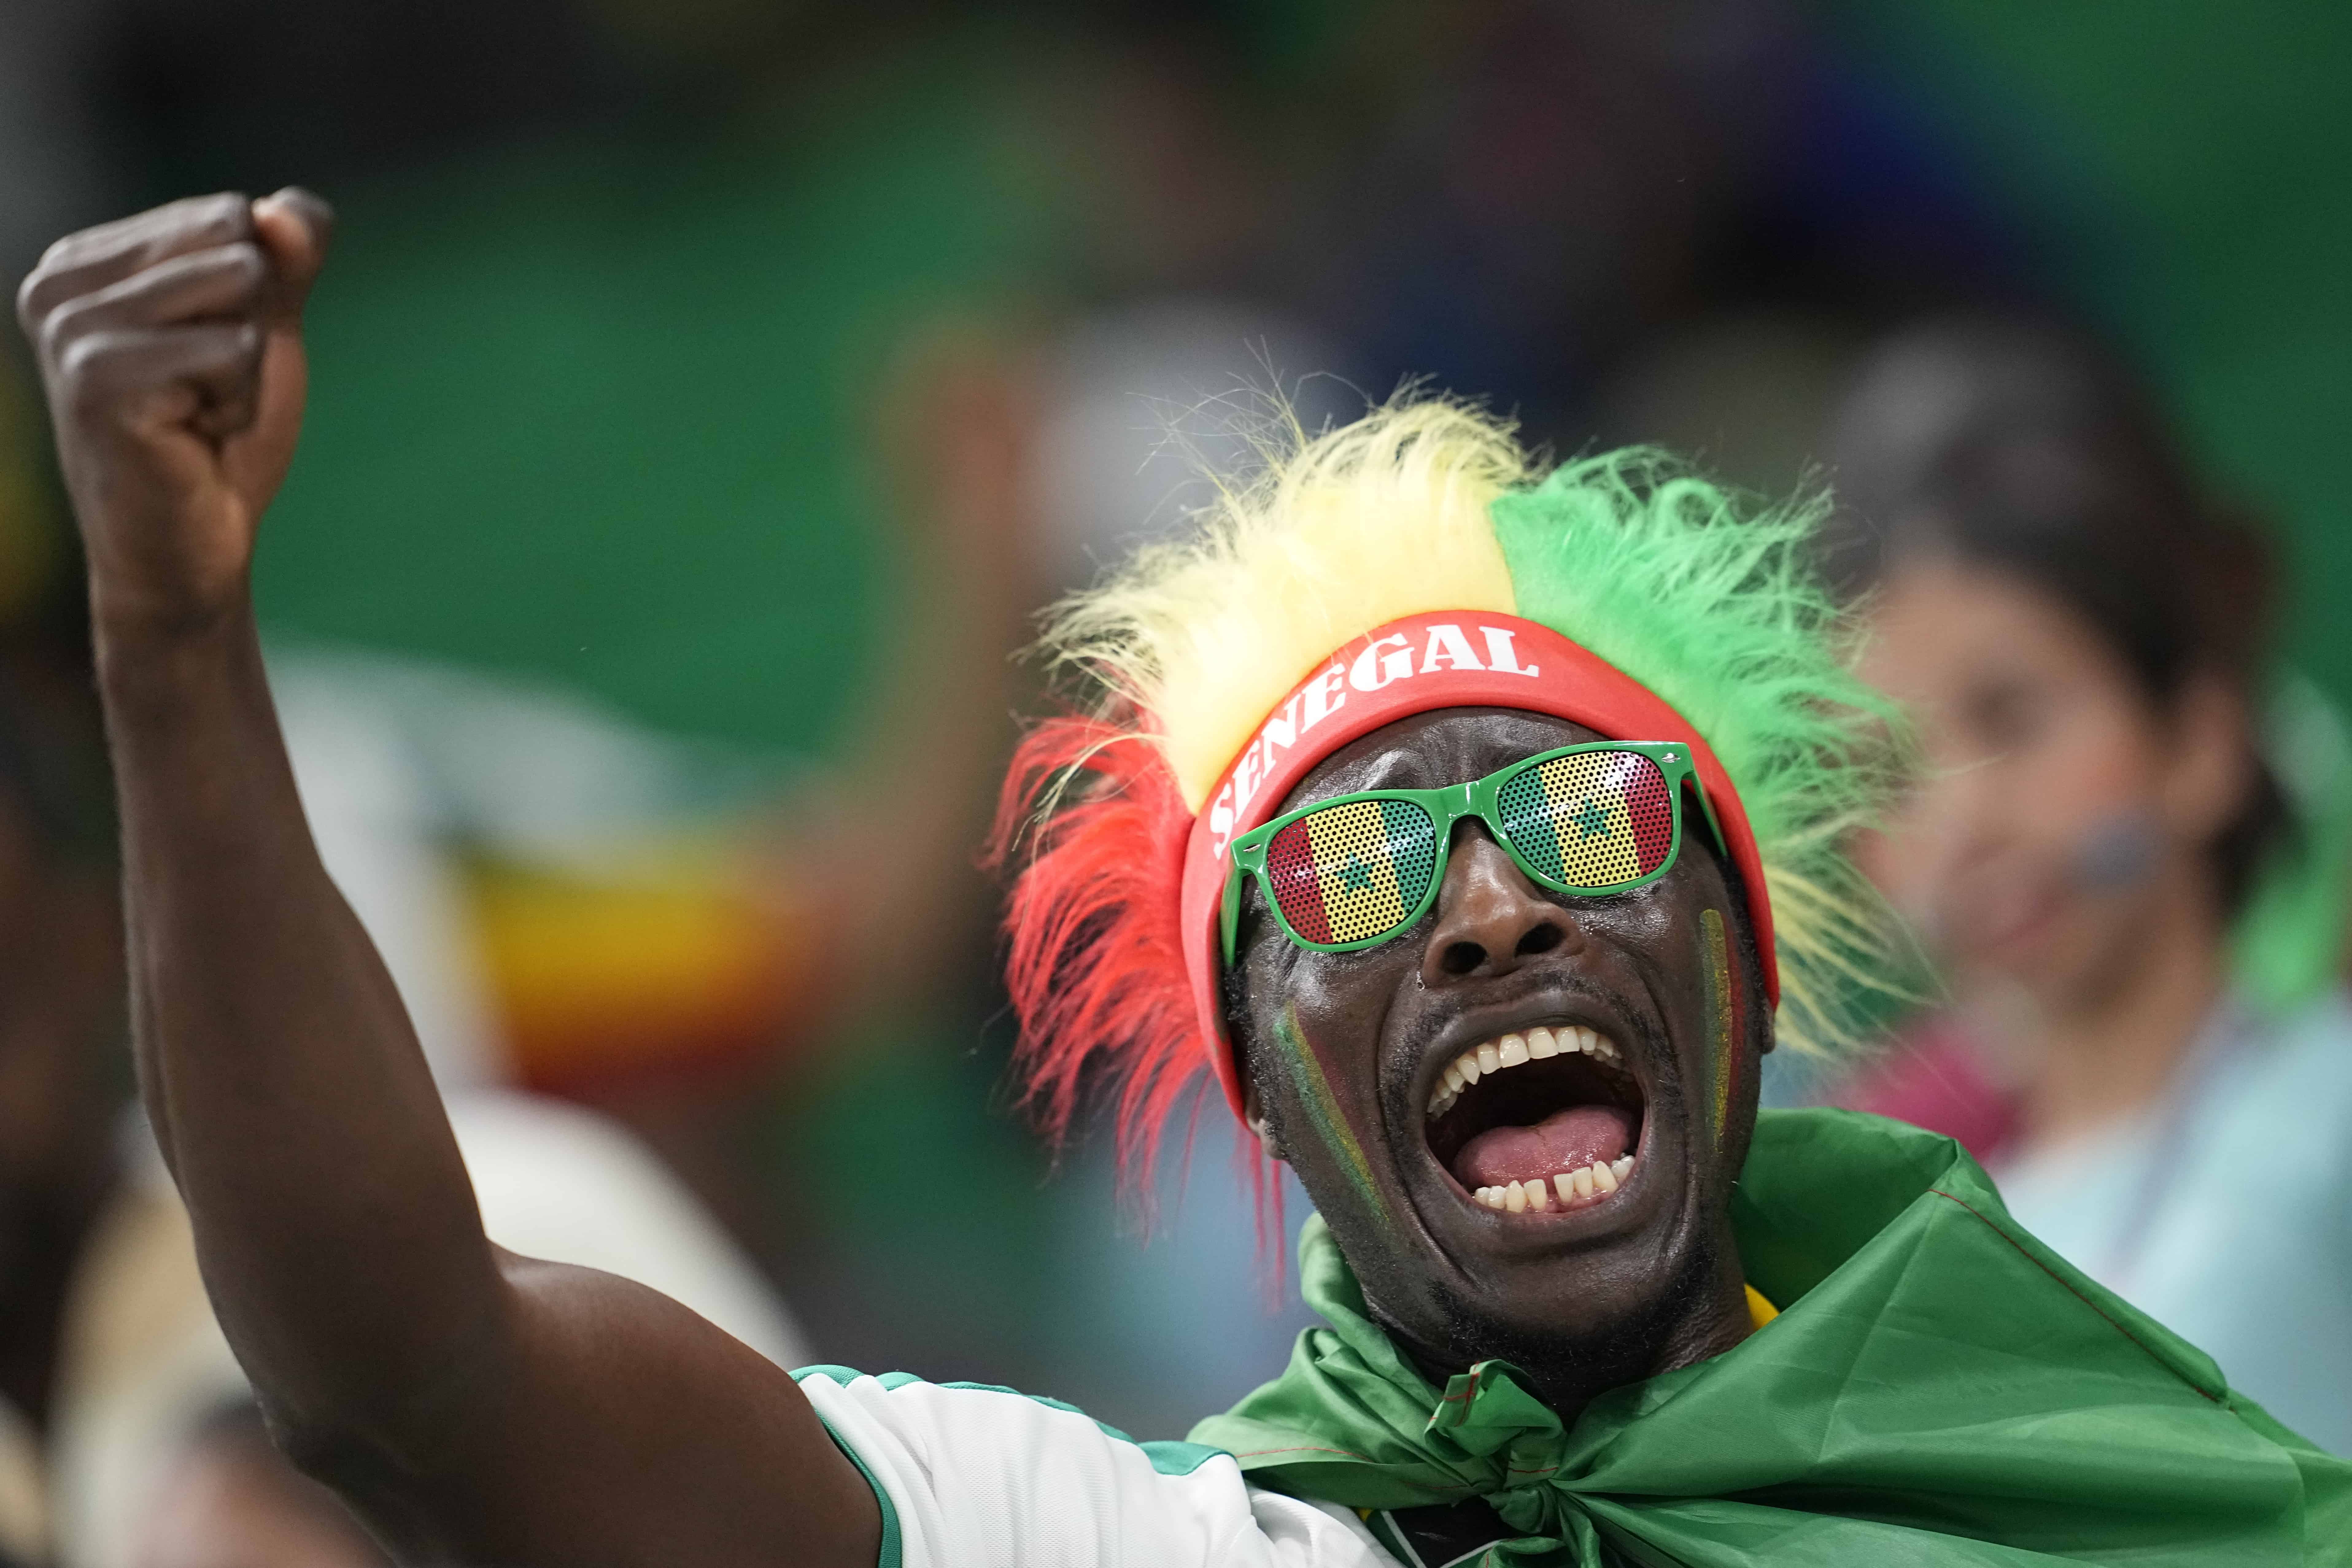 Un hincha del equipo de Senegal aplaude antes del inicio del partido de fútbol del grupo A de la Copa Mundial entre Senegal y Holanda en el Estadio Al Thumama, en Doha, Qatar, el lunes 21 de noviembre de 2022.